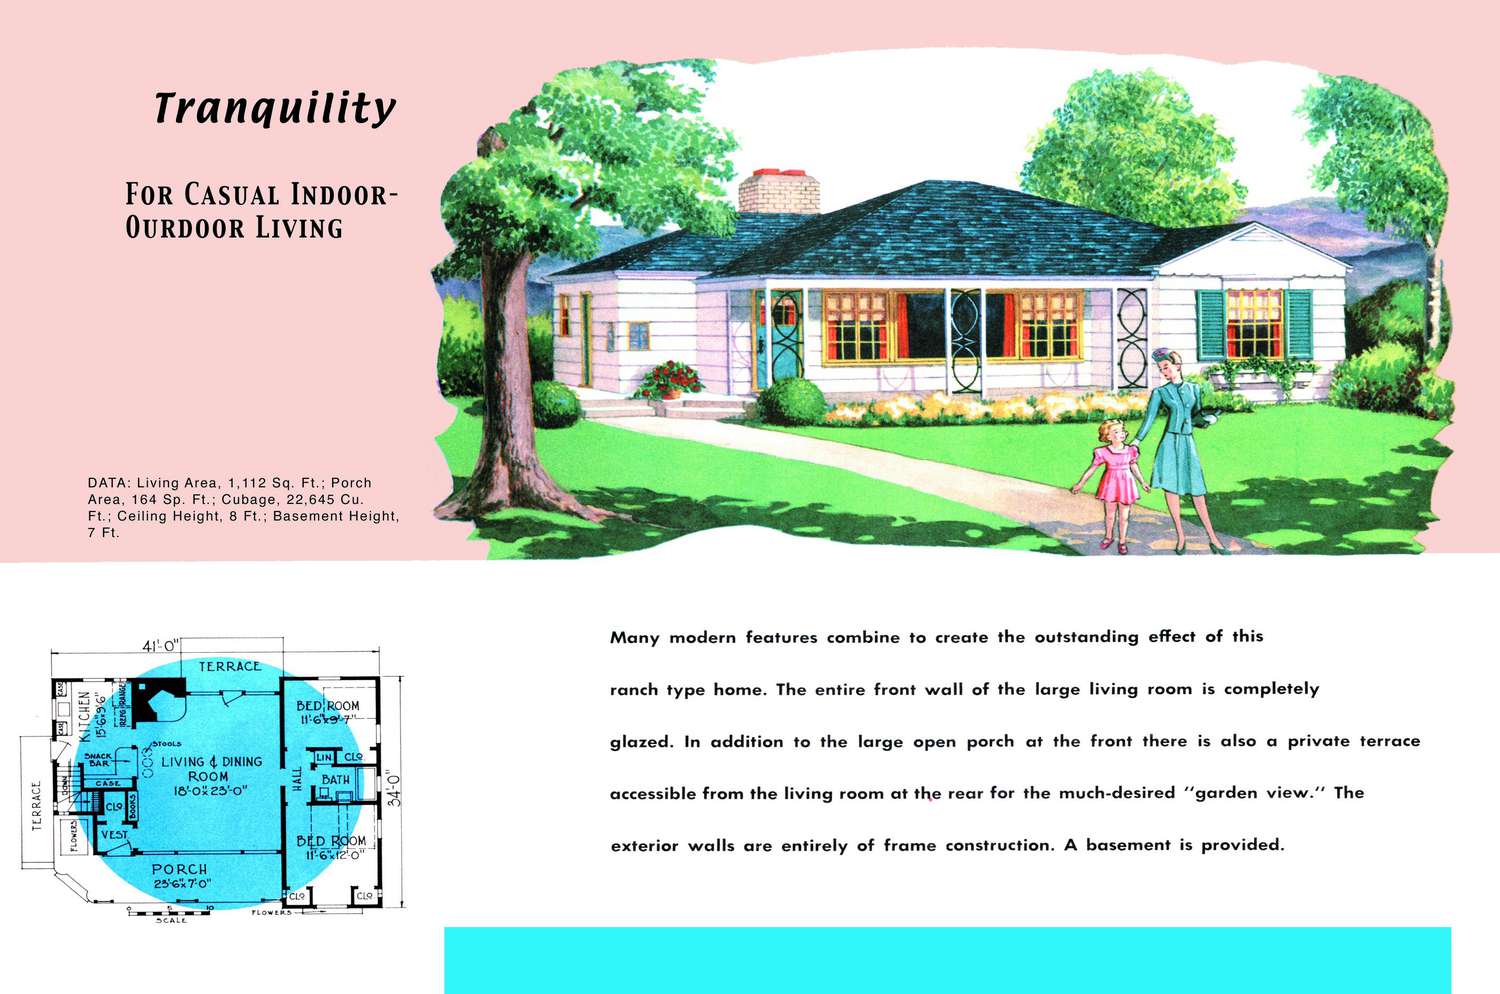 Plano y render de una casa estilo rancho de los años 50 llamada Tranquility